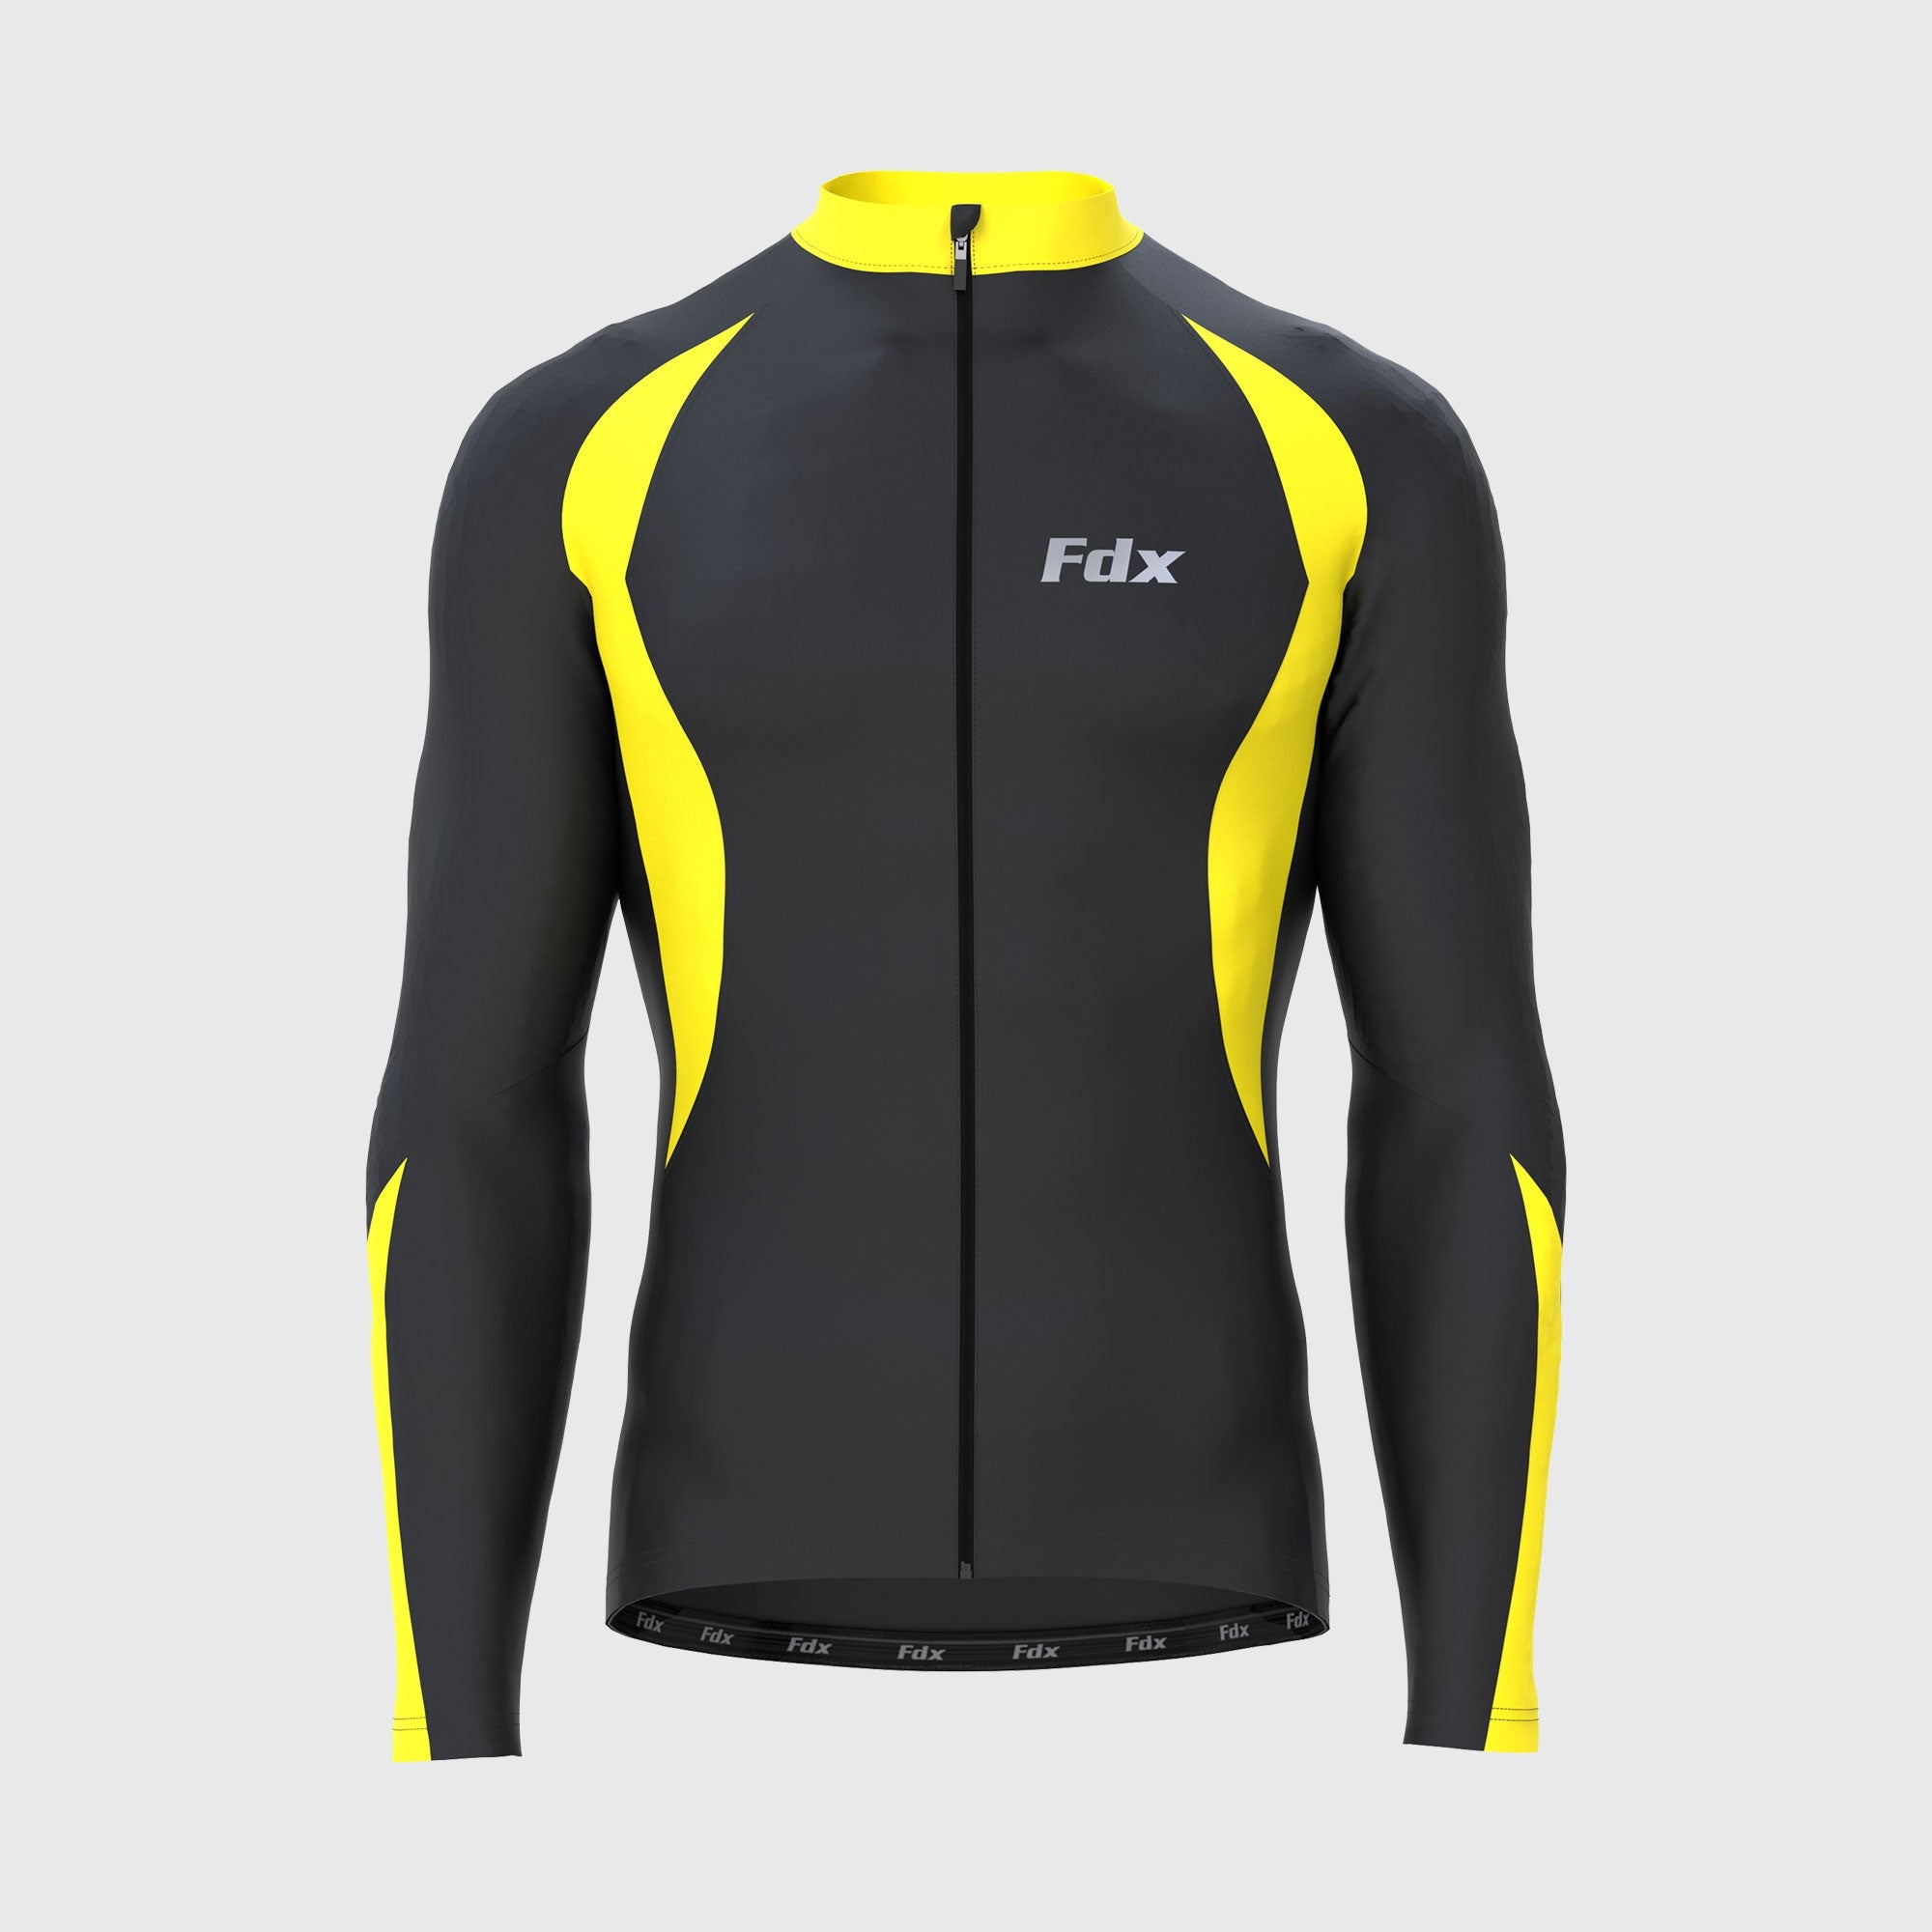 Buy Fdx Men's Long Sleeve Winter Cycling Jerseys | FDX Sports 